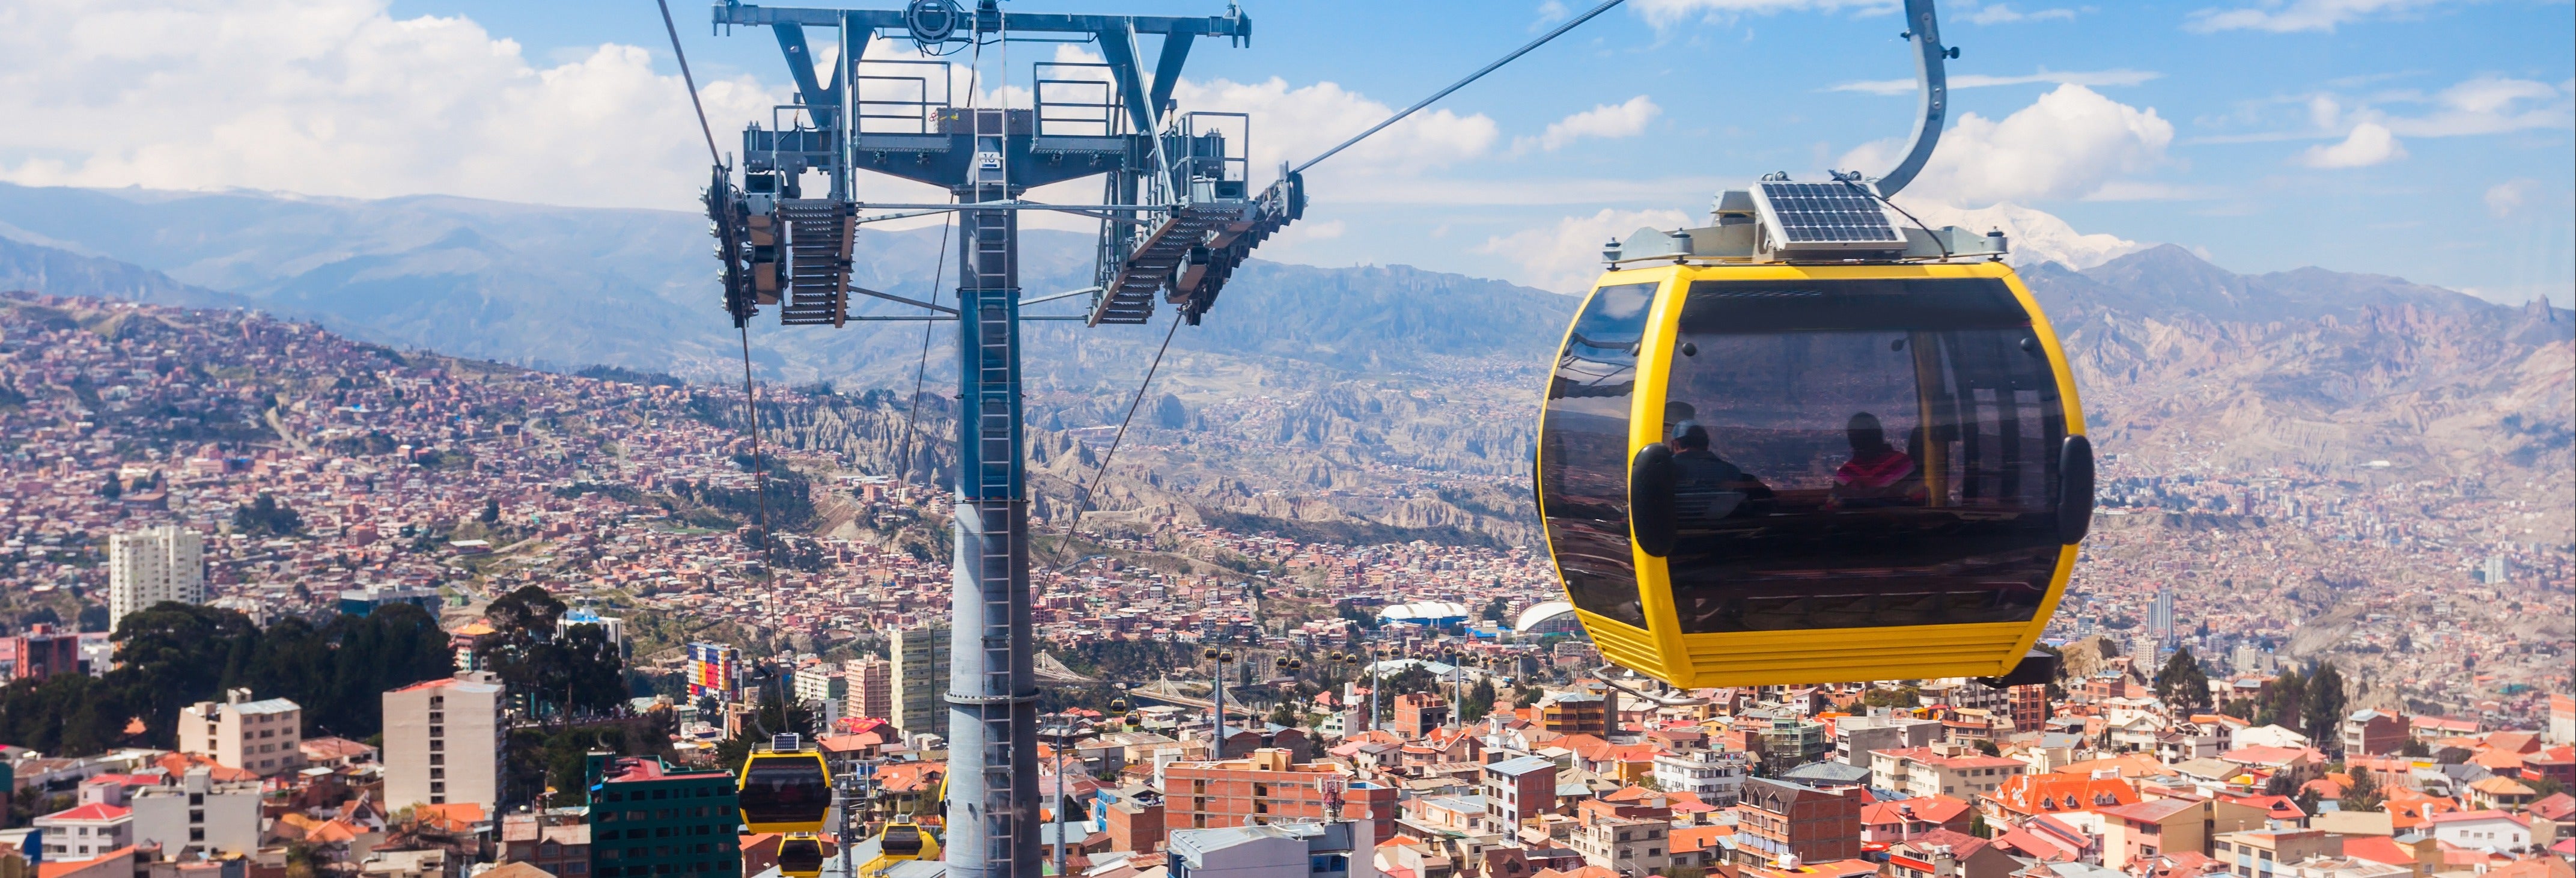 Tour privado dos teleféricos de La Paz